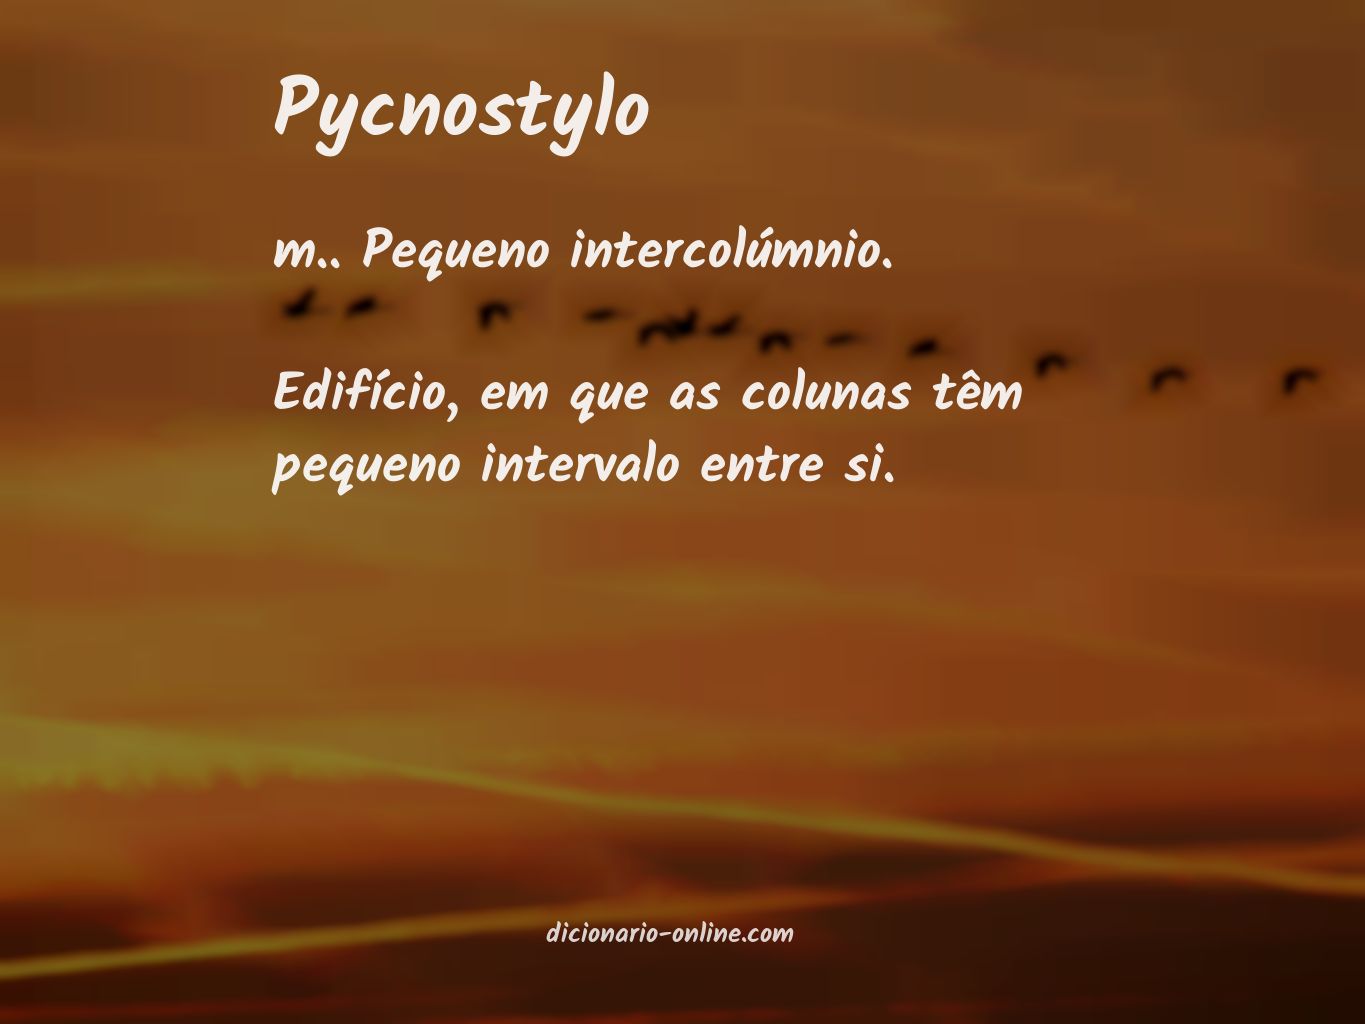 Significado de pycnostylo